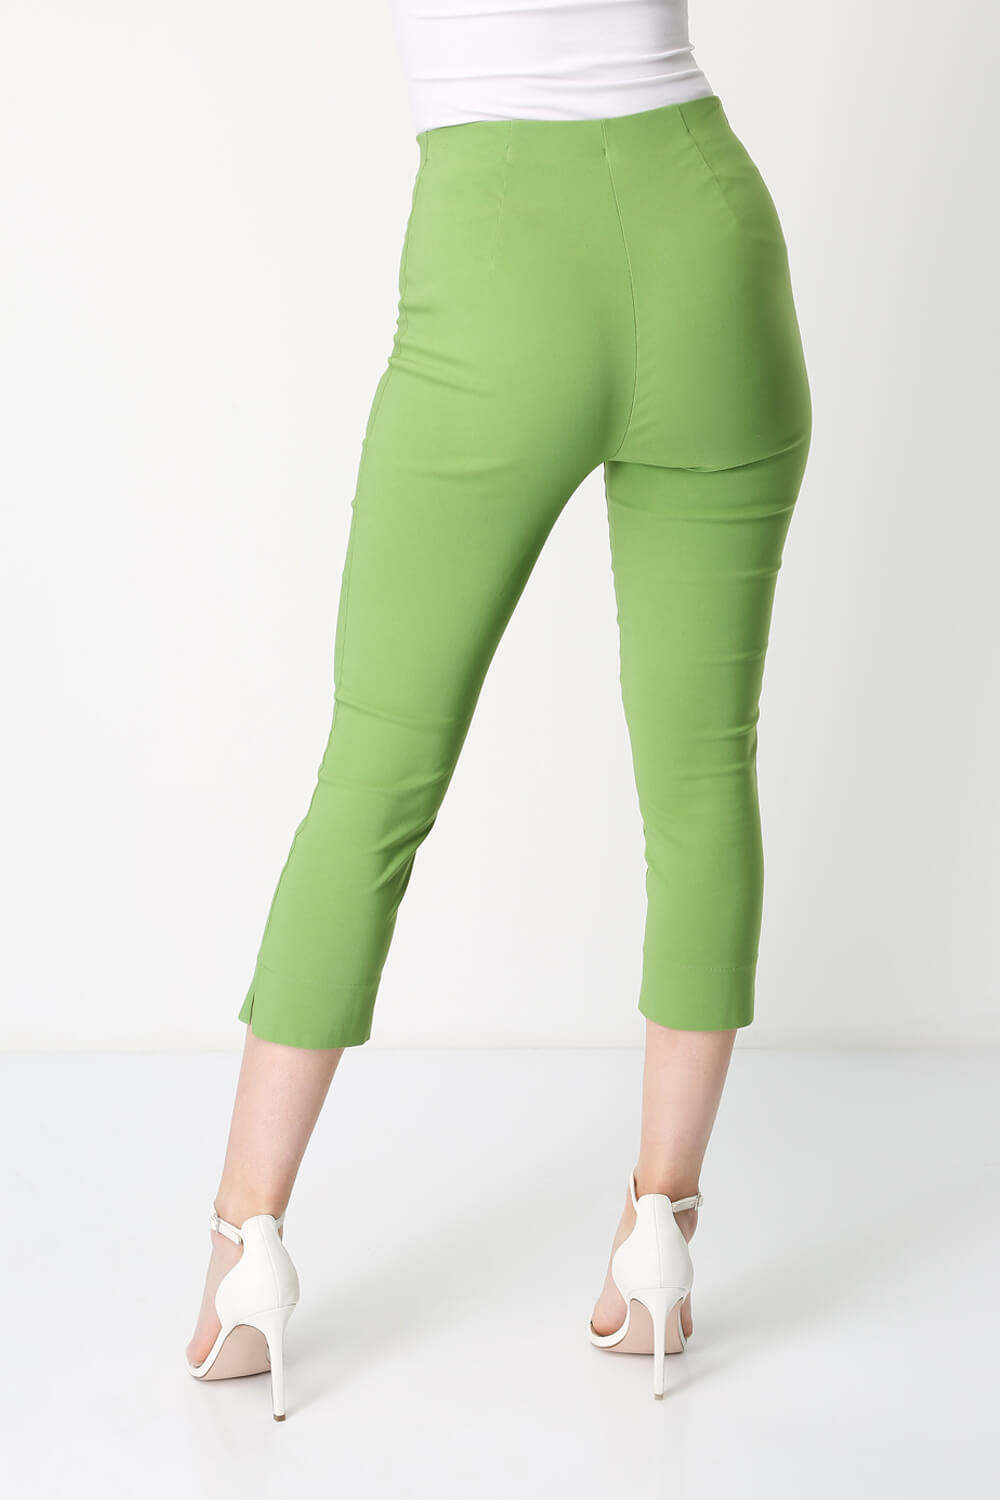 Cropped Stretch Trouser in Pale Green - Roman Originals UK